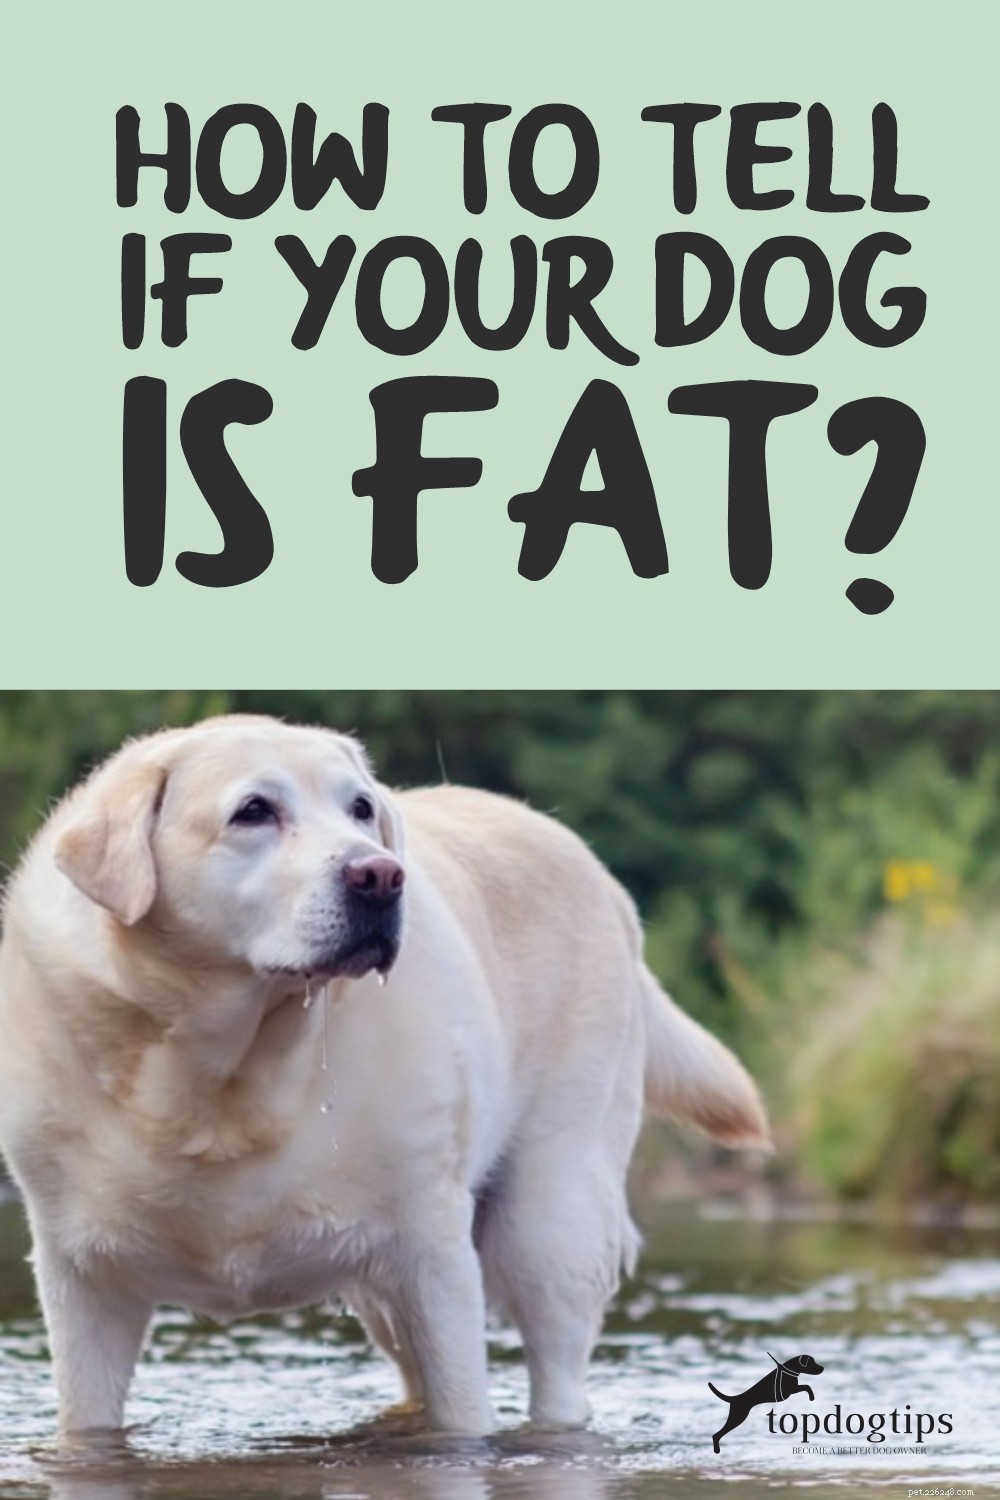 あなたの犬が太っているのかどうかを見分ける方法は？ 